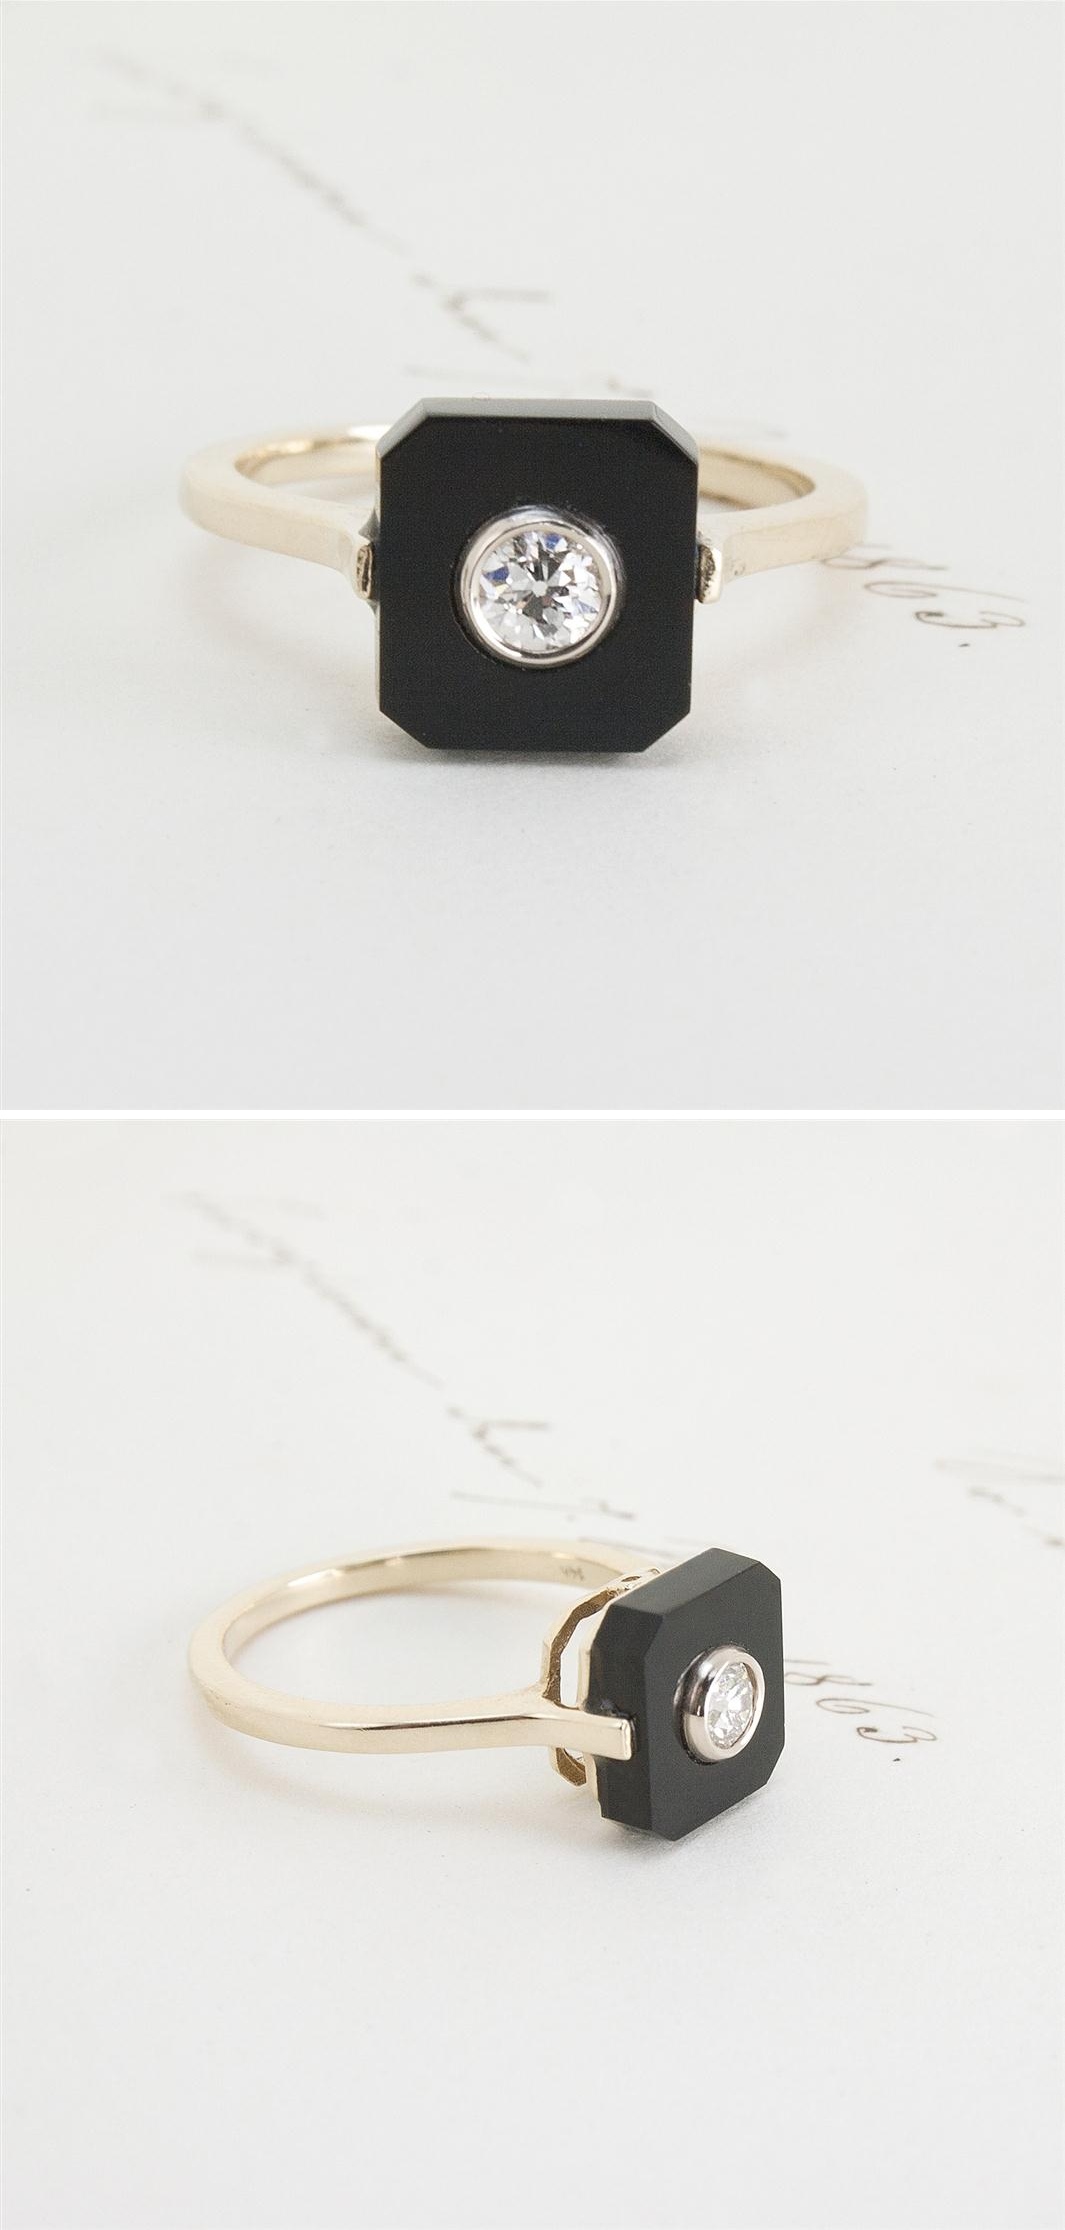 Erica Weiner's 1909 Onyx and Diamond Ring